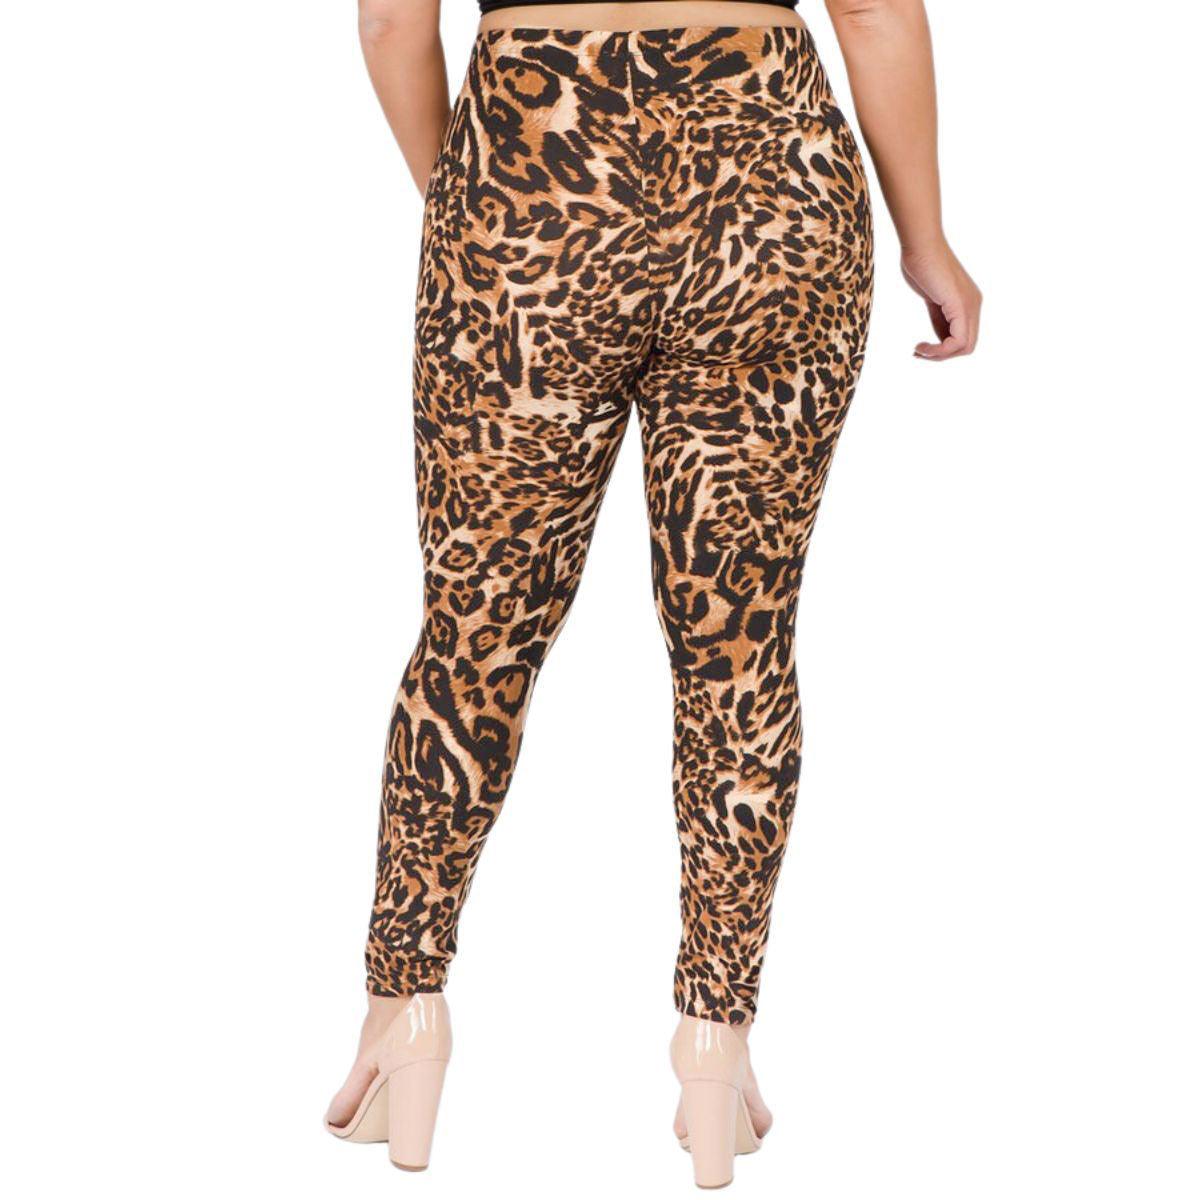 Roar in Style: Trendy Plus Size Leopard Print Leggings - Buy Now